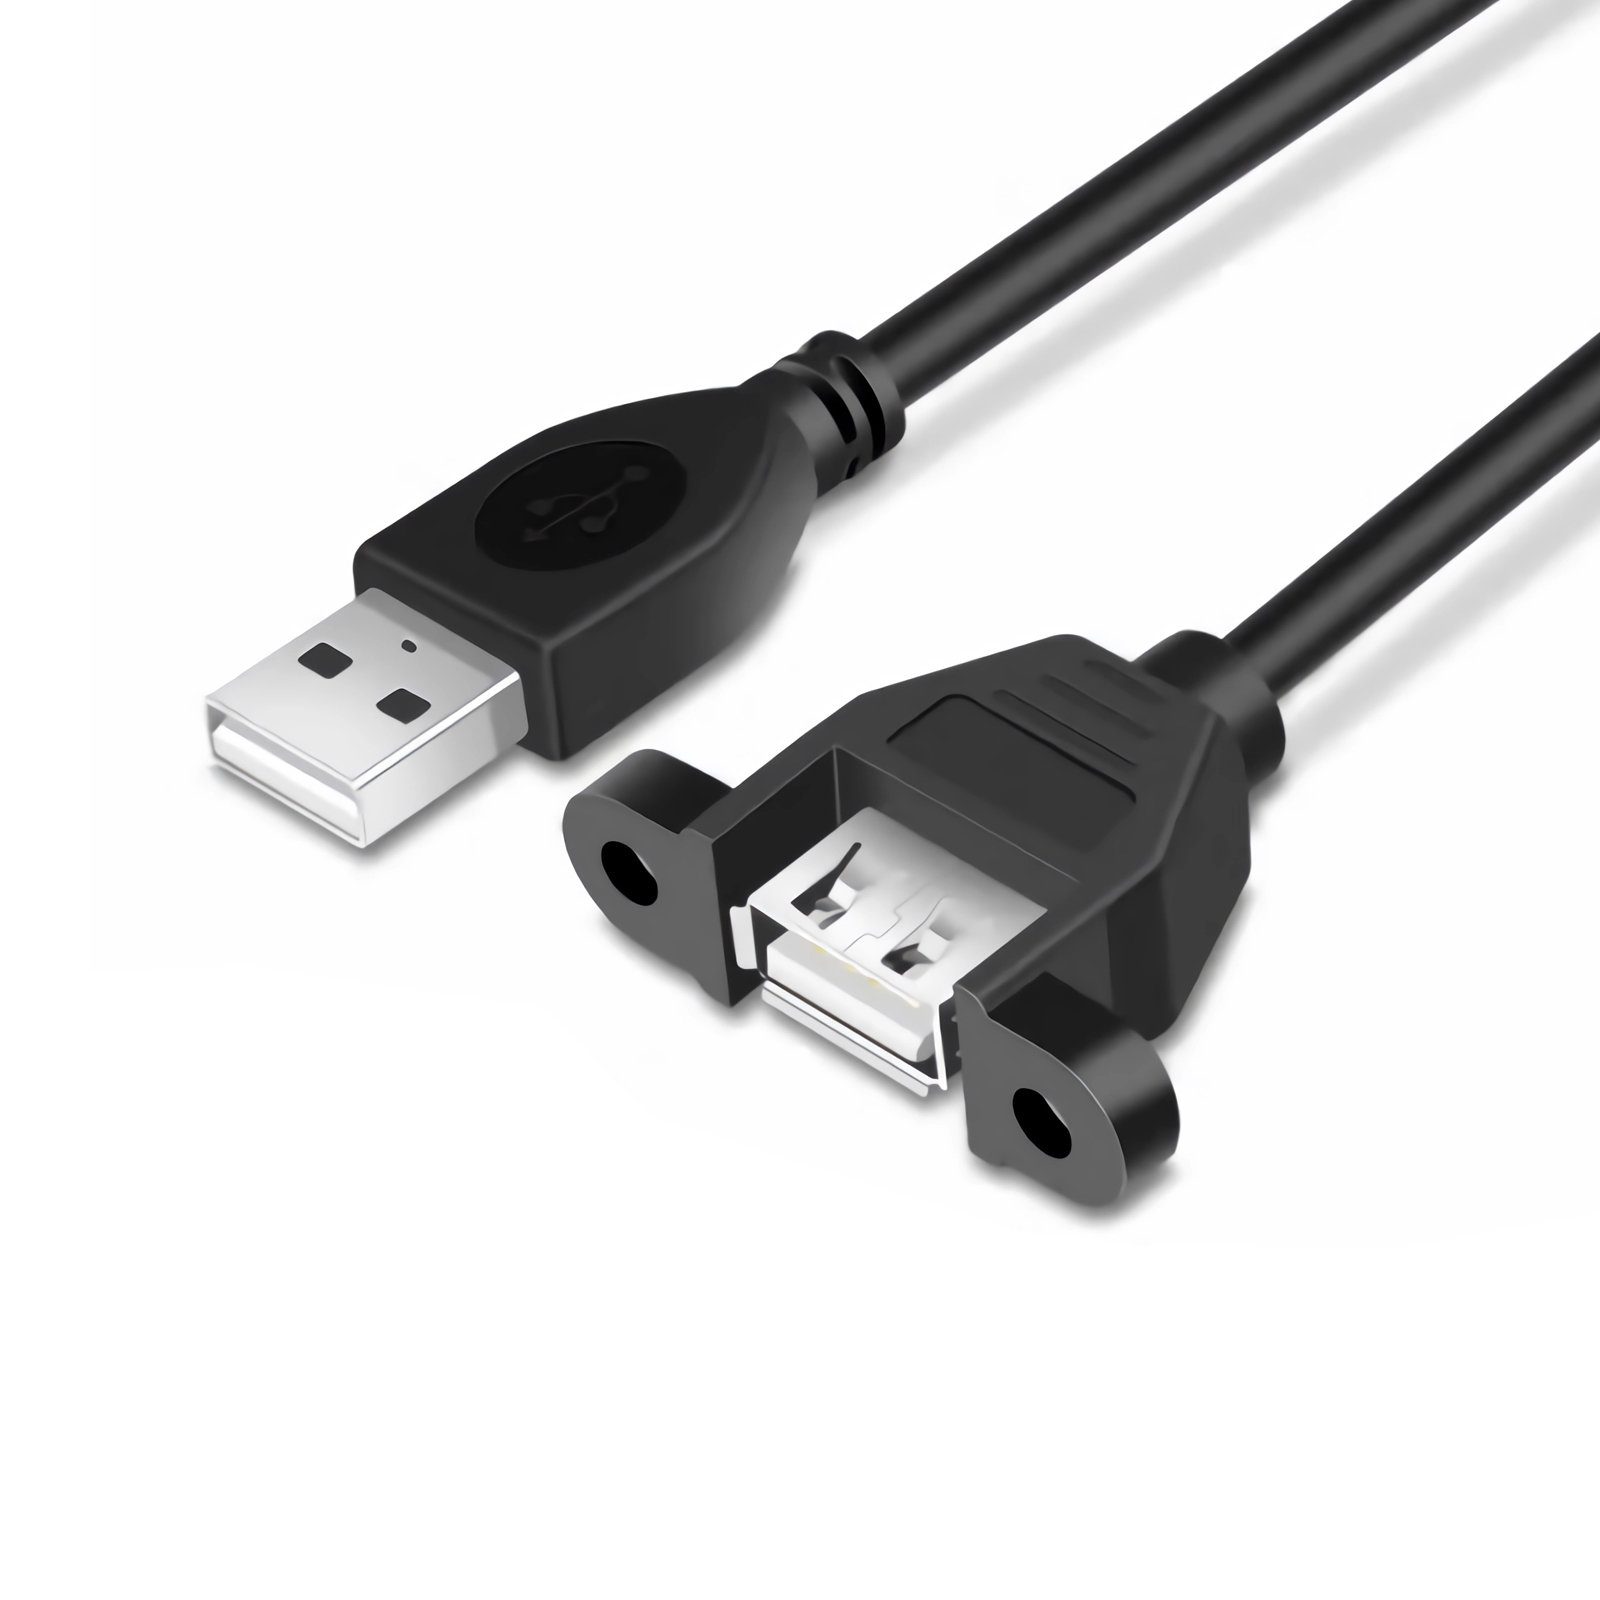 Bolwins K23 50cm USB 2.0 Kabel Verlängerungskabel Daten festbar für Laptop  PC Computer-Kabel